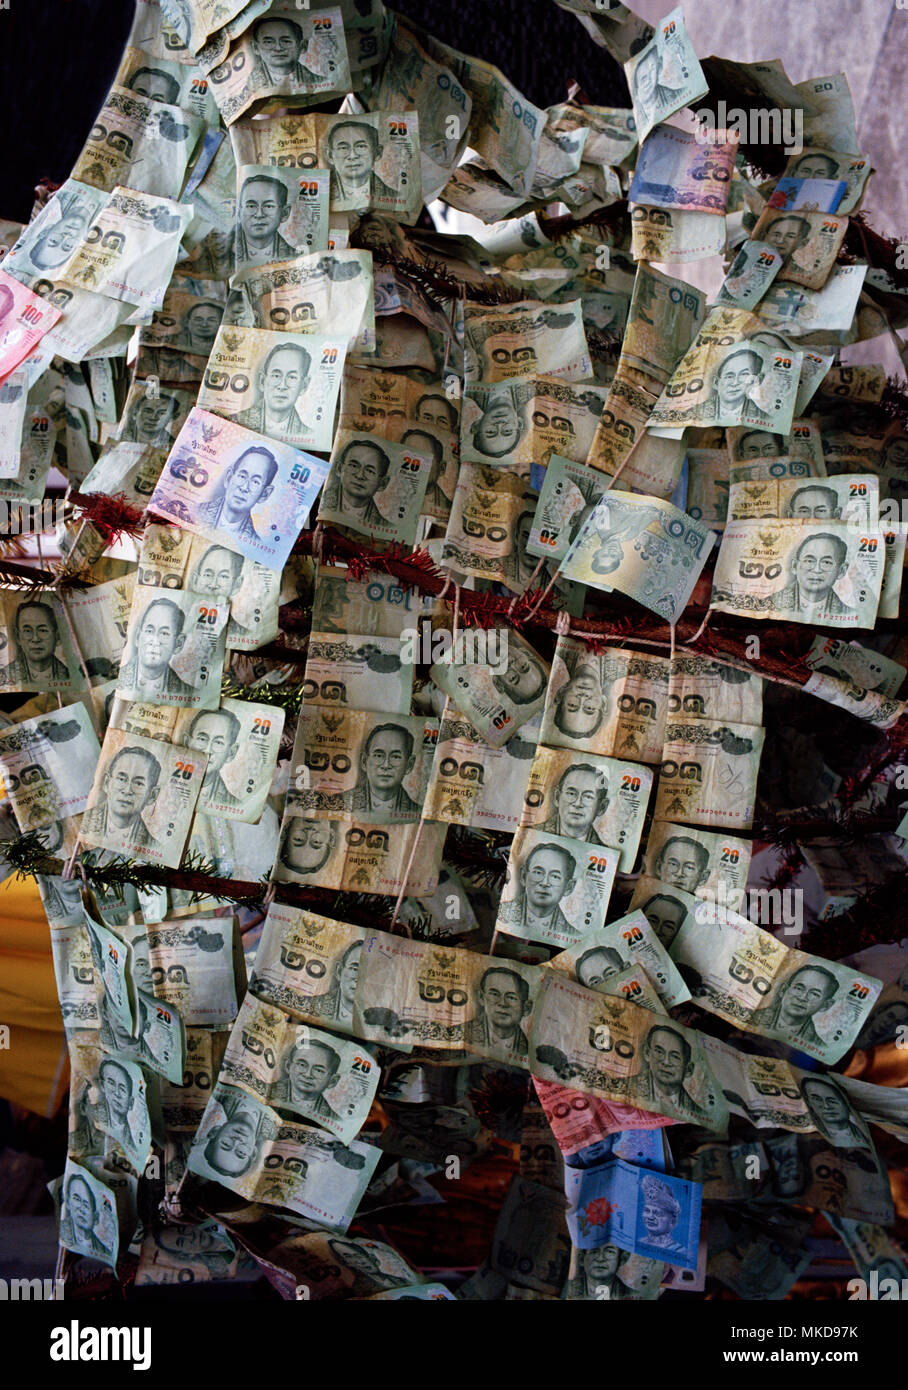 Denaro - la moneta Thai Baht in prostitute tempio Wat Kanikapon nella Chinatown di Bangkok in Thailandia nel sud-est asiatico in Estremo Oriente. Corsa di beneficenza Foto Stock